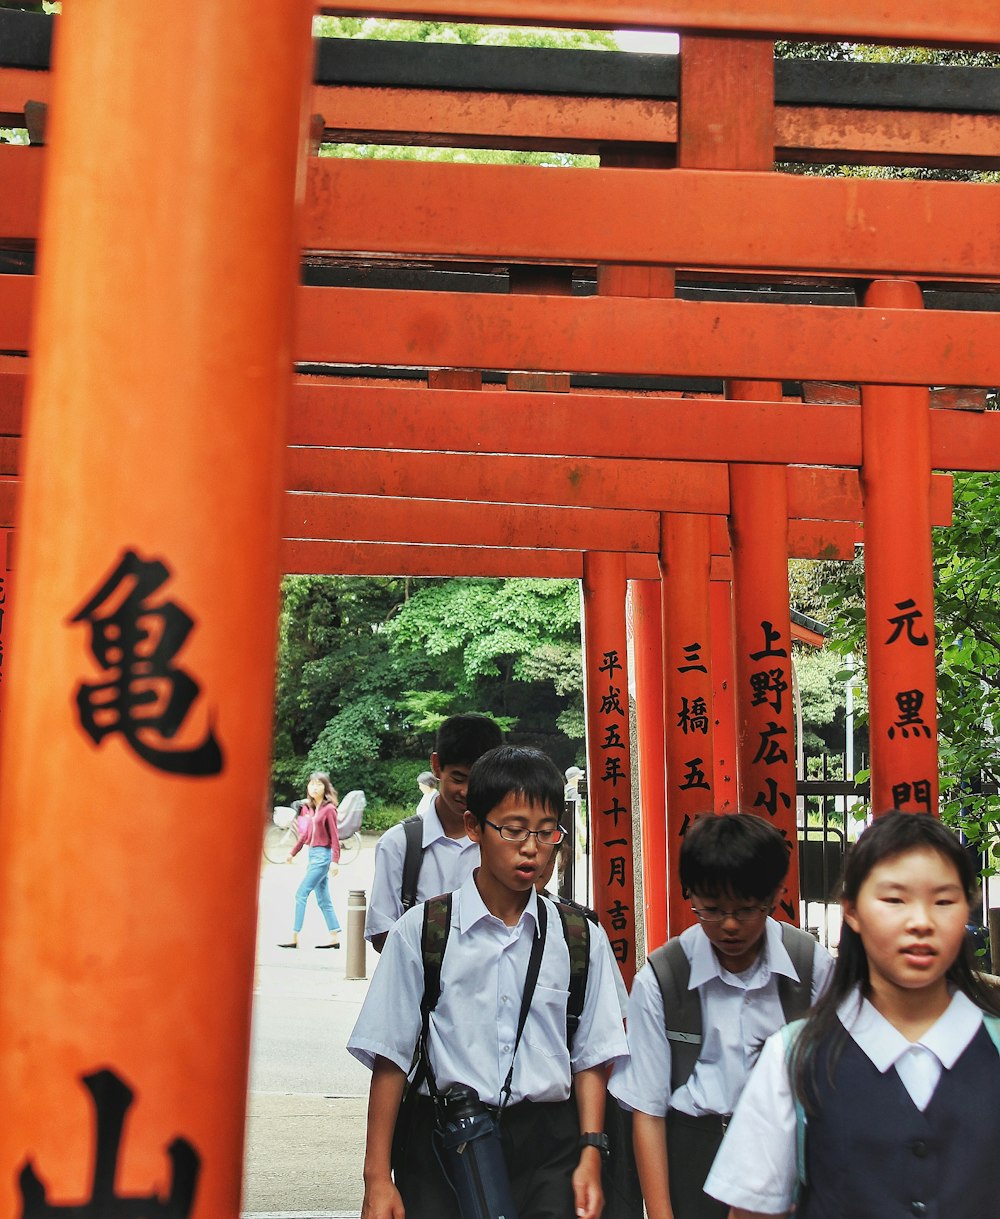 a group of children walking under an orange structure